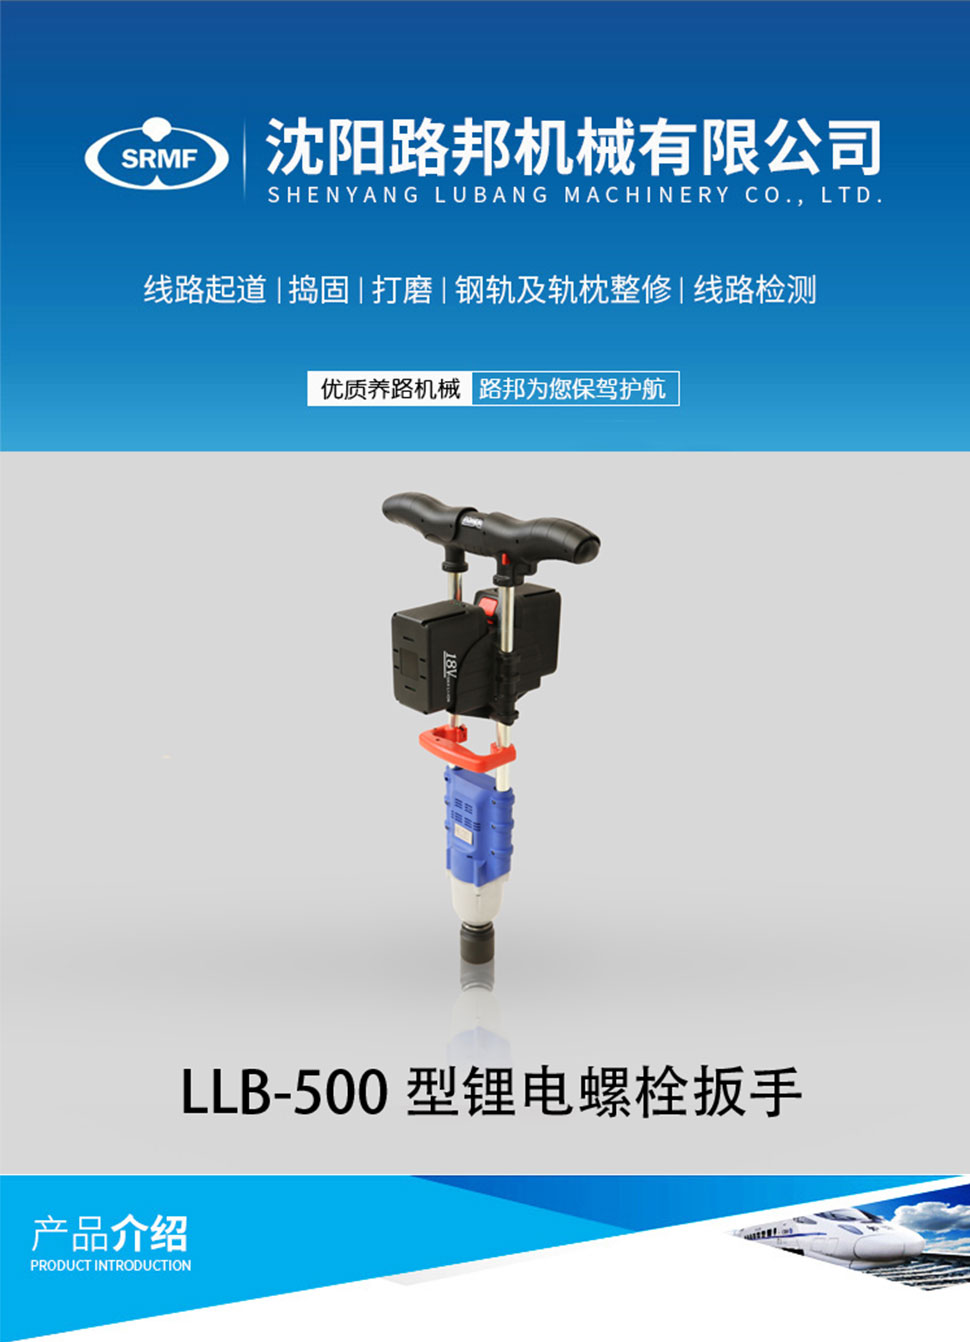 LLB-500型锂电螺栓扳手